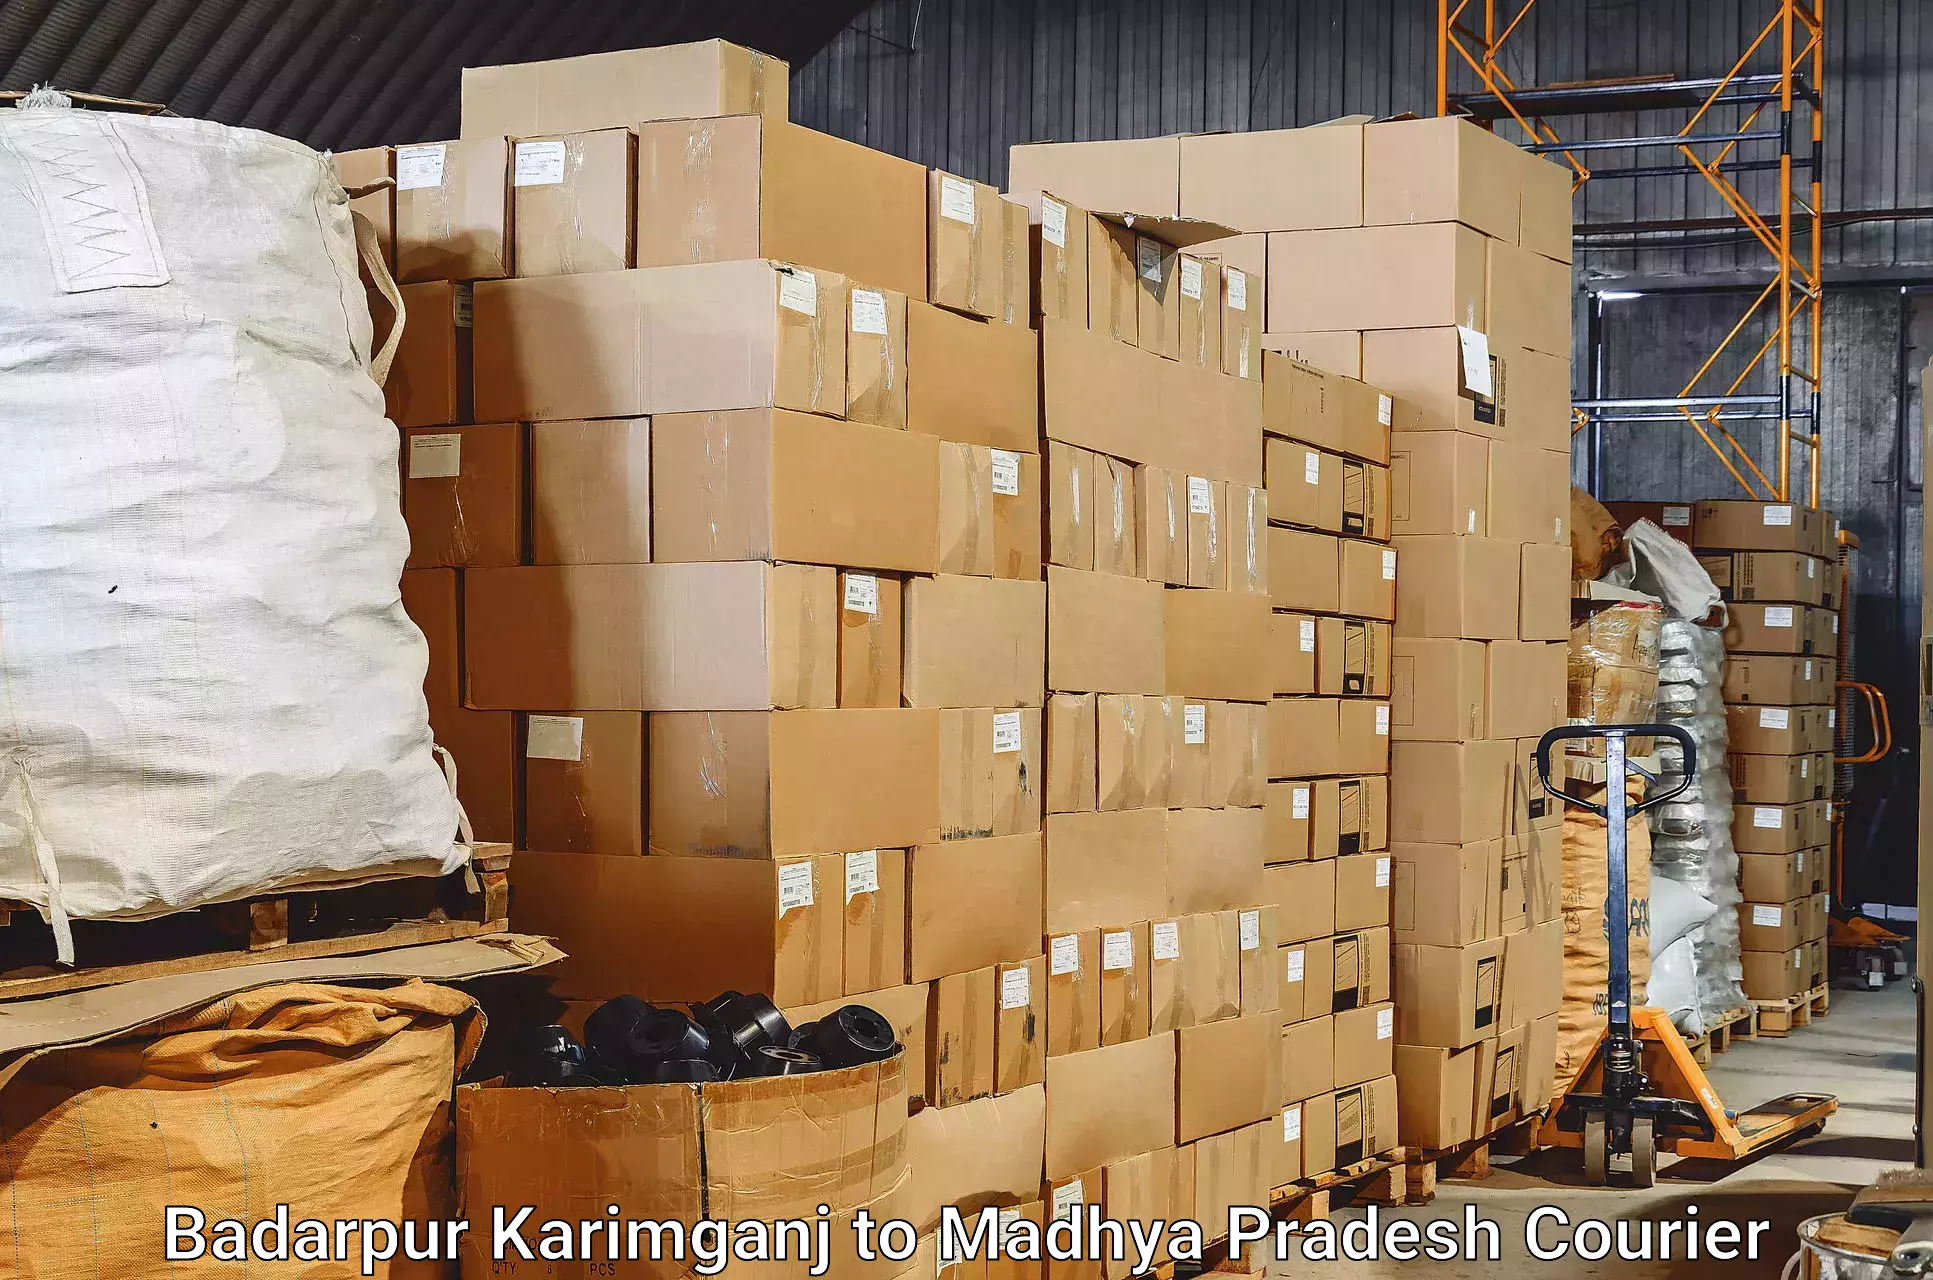 Baggage shipping schedule in Badarpur Karimganj to Mandideep